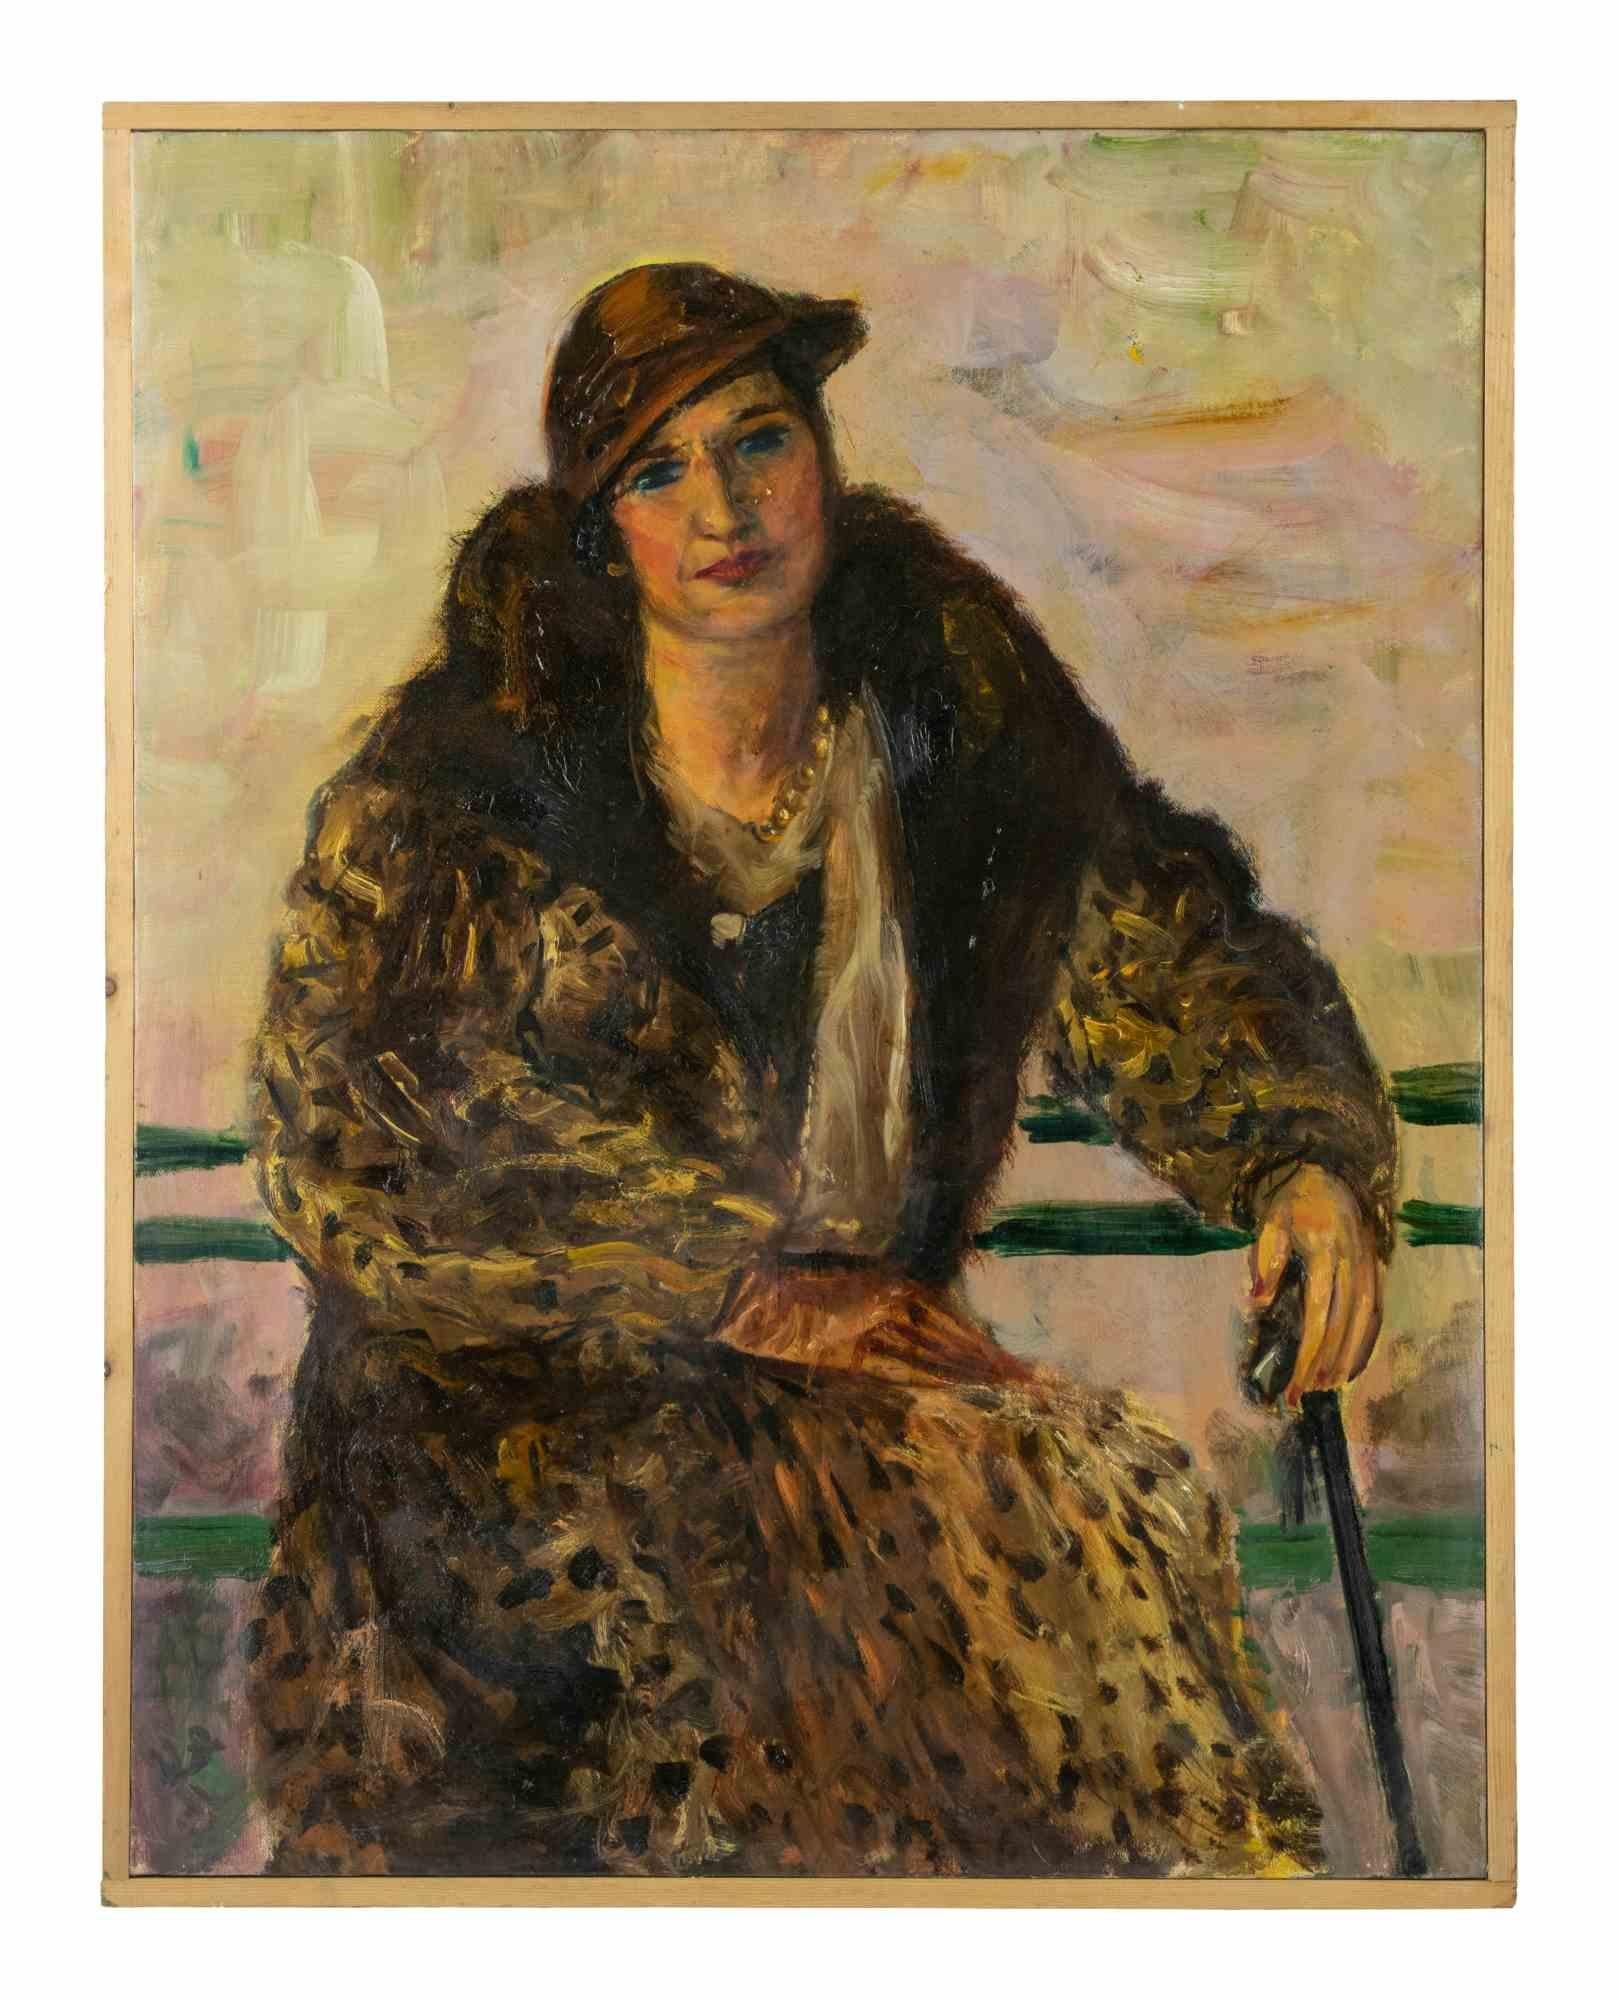 Die weibliche Figur ist ein modernes Kunstwerk von Antonio Feltrinelli aus den 1930er Jahren.

Inklusive Rahmen: 93,5 x 73,5 cm

Gemischte farbige Ölgemälde auf Leinwand


Antonio Feltrinelli (Mailand, 1887 - Gargnano, 1942)
Er wurde am 1. Juni 1887